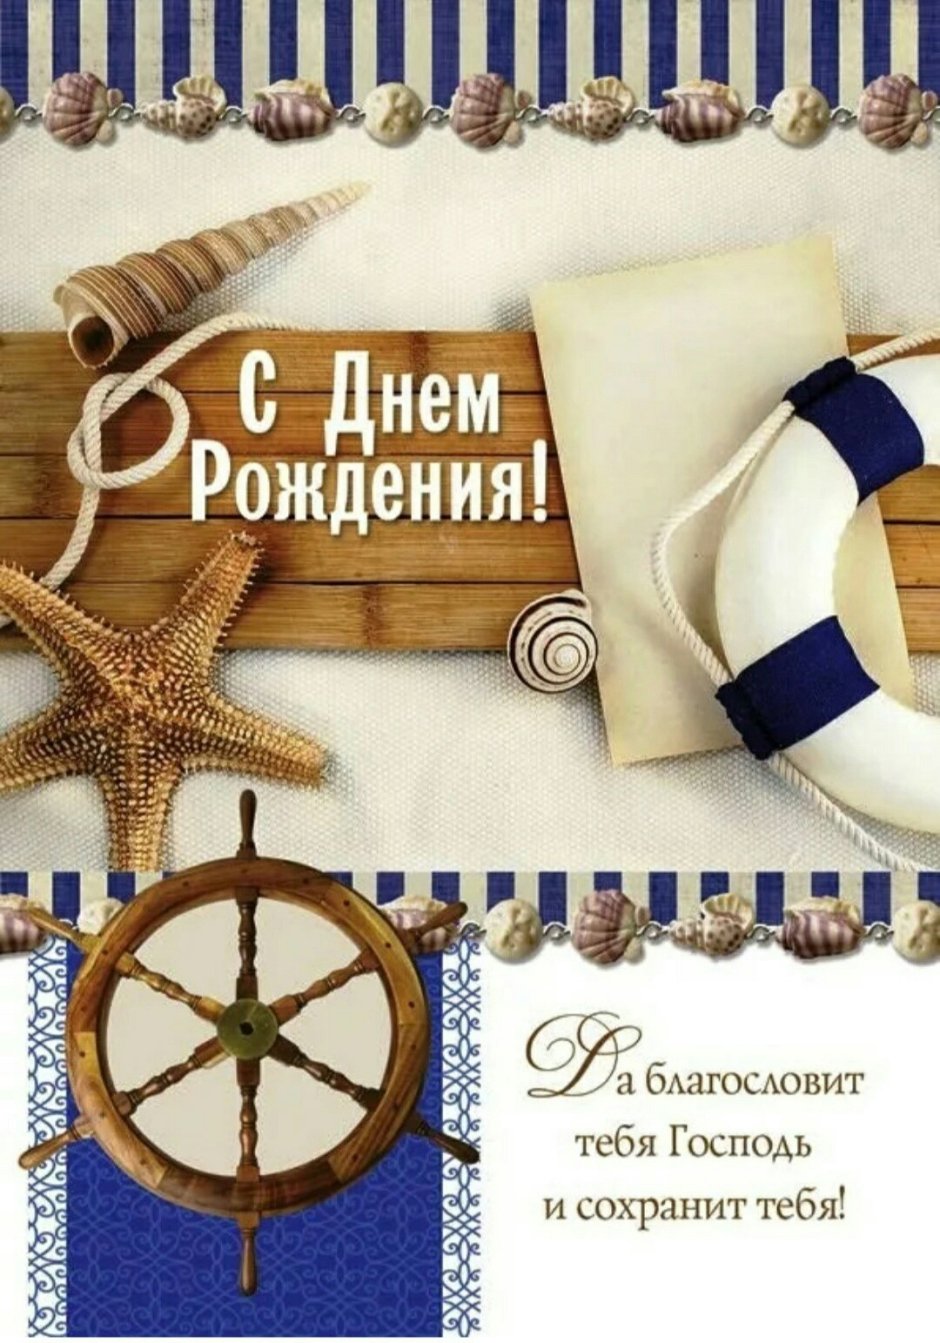 Скрапбукинг открытка в морском стиле